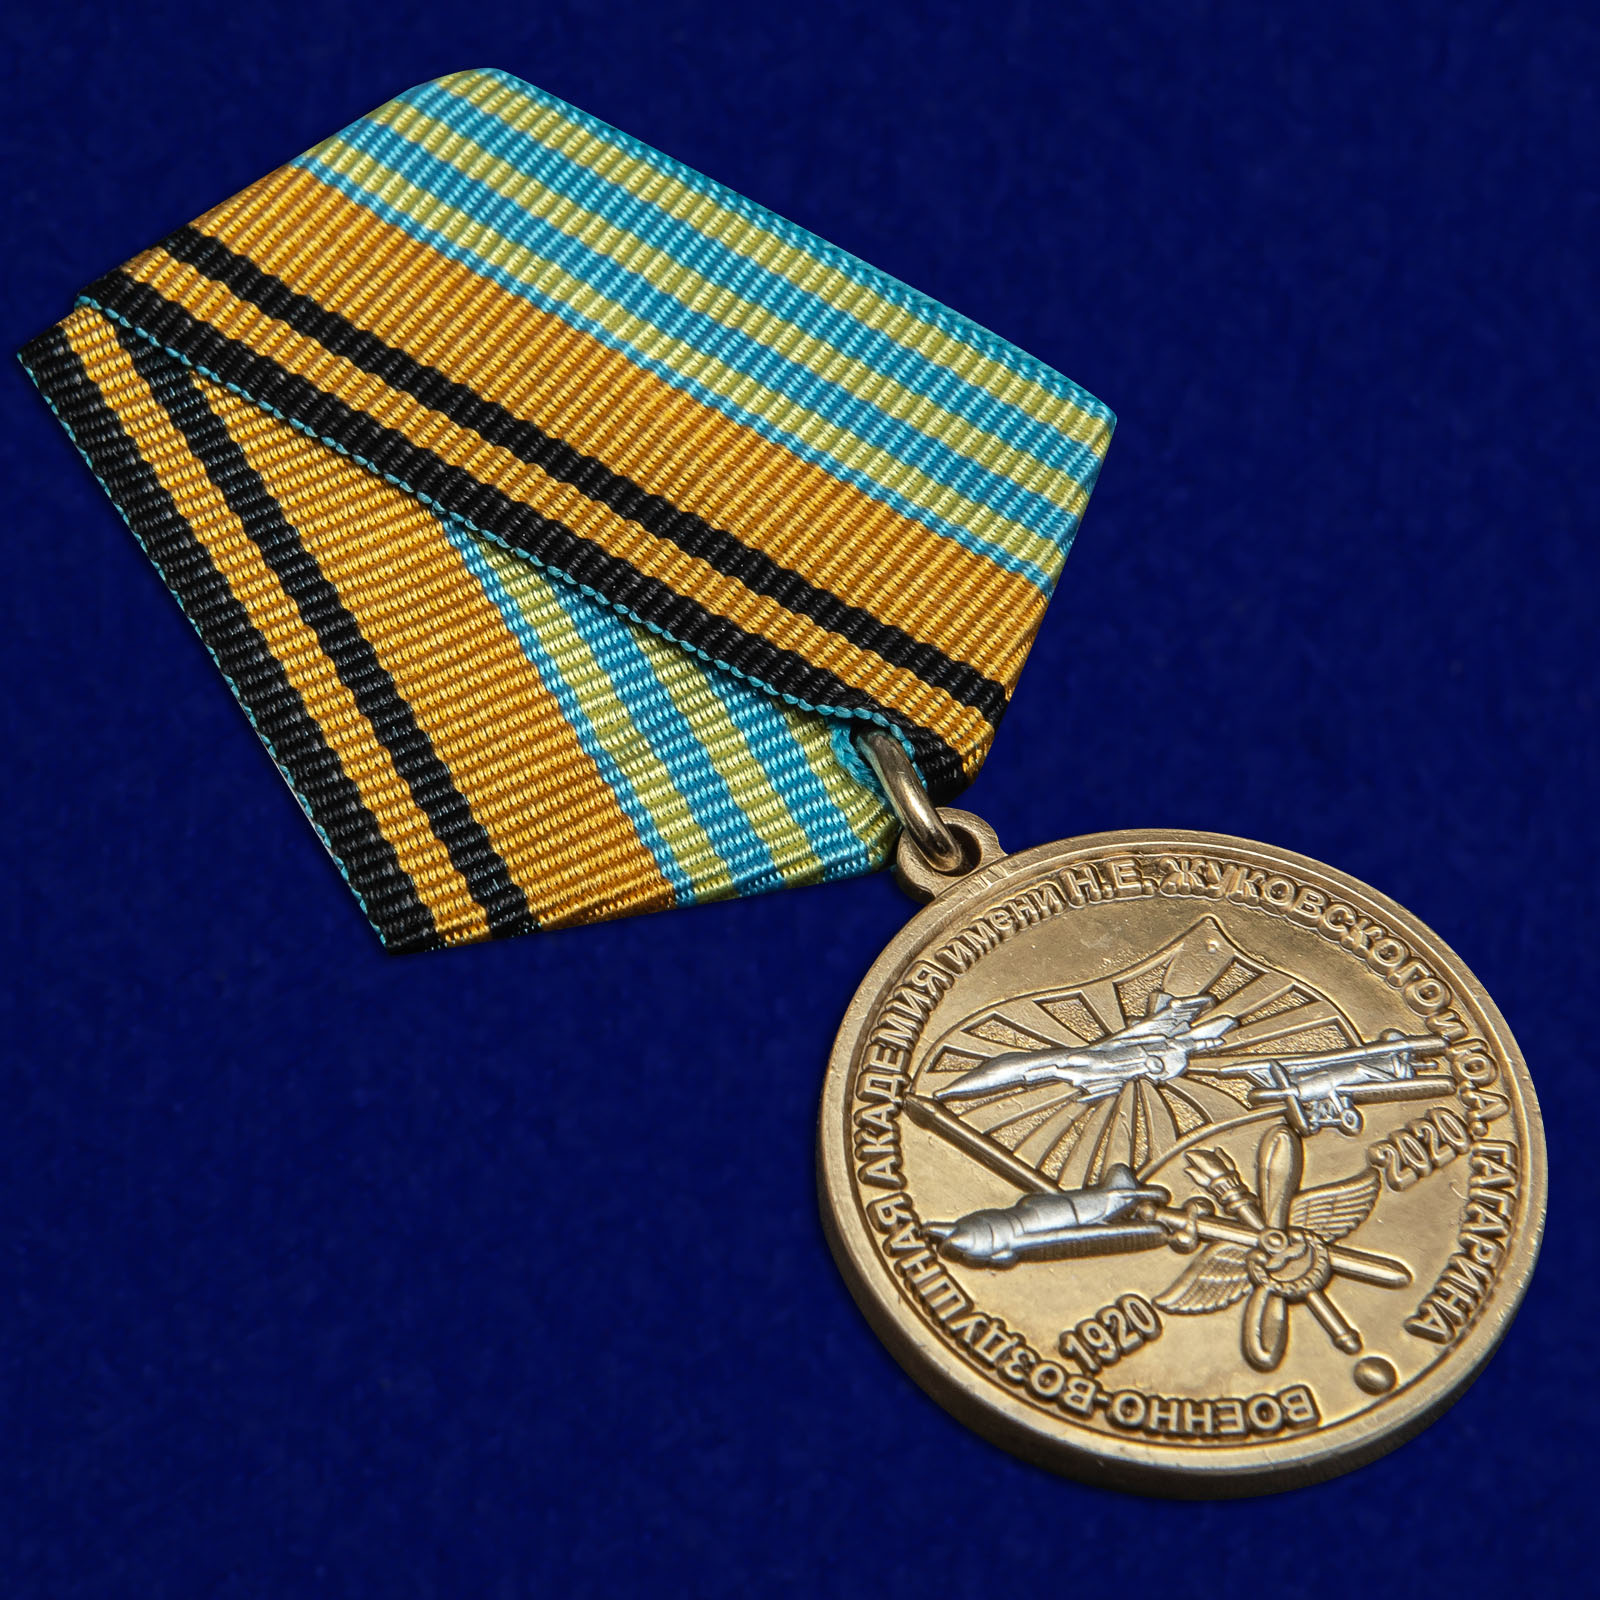 Нагрудная медаль "100 лет Военно-воздушной академии им. Н.Е. Жуковского и Ю.А. Гагарина" 